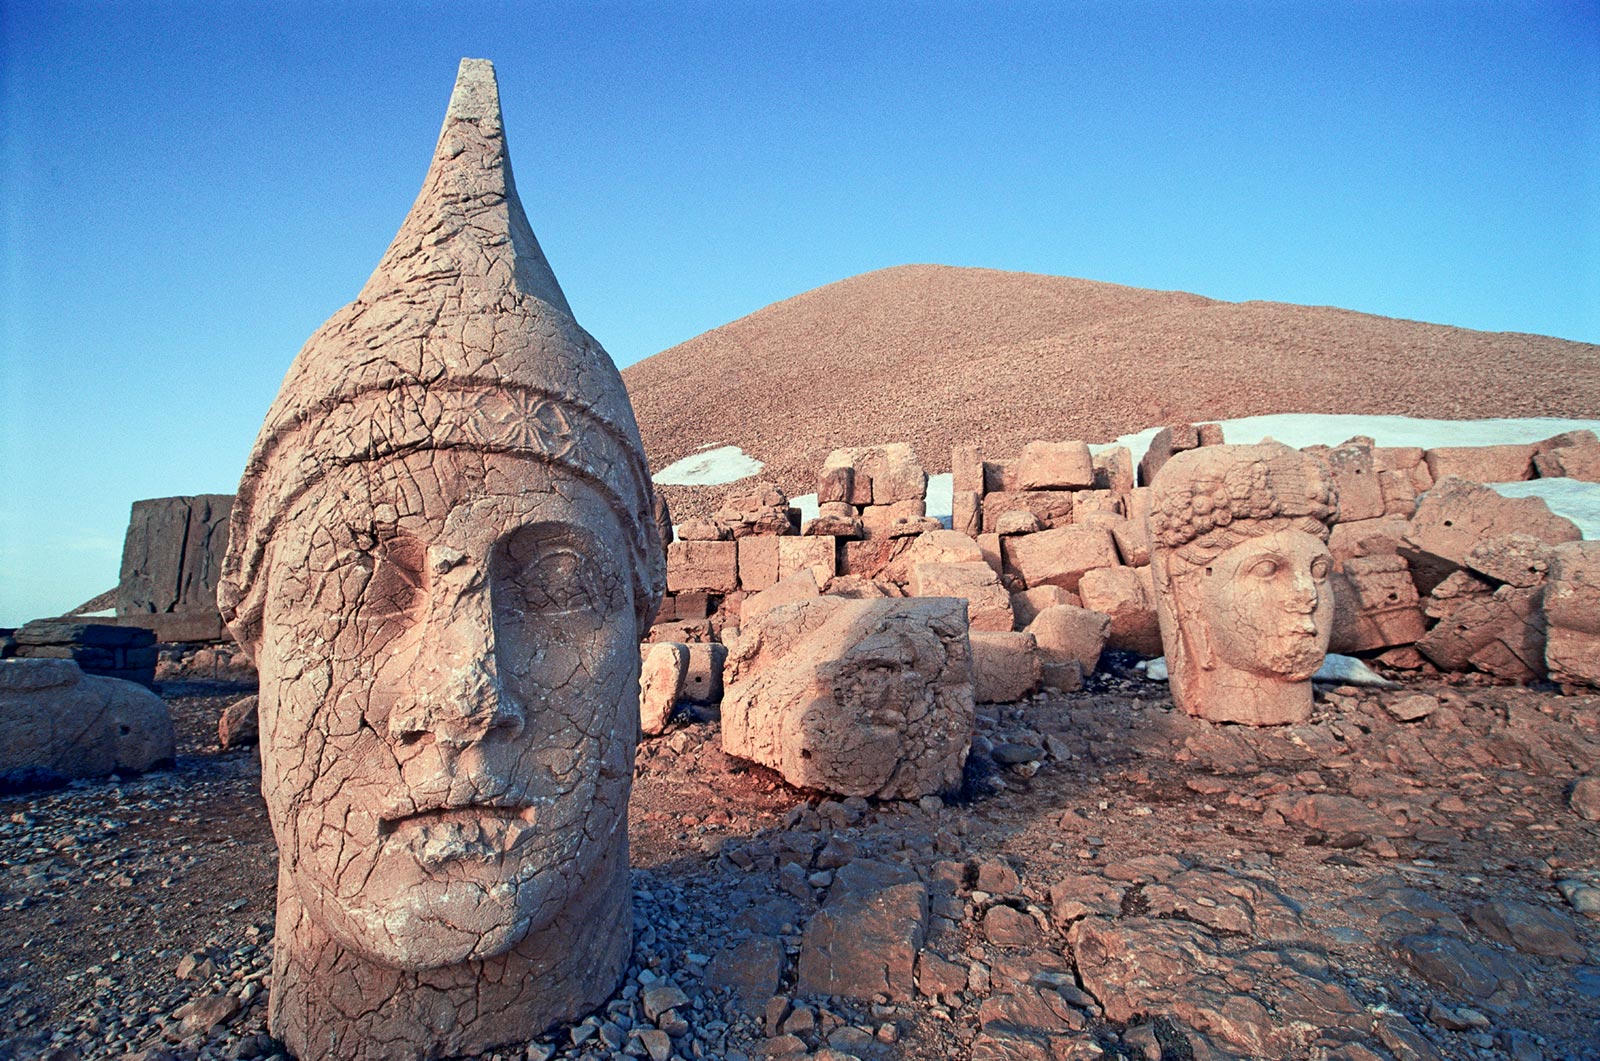 Stone heads atop Mt. Nemrut Dagi